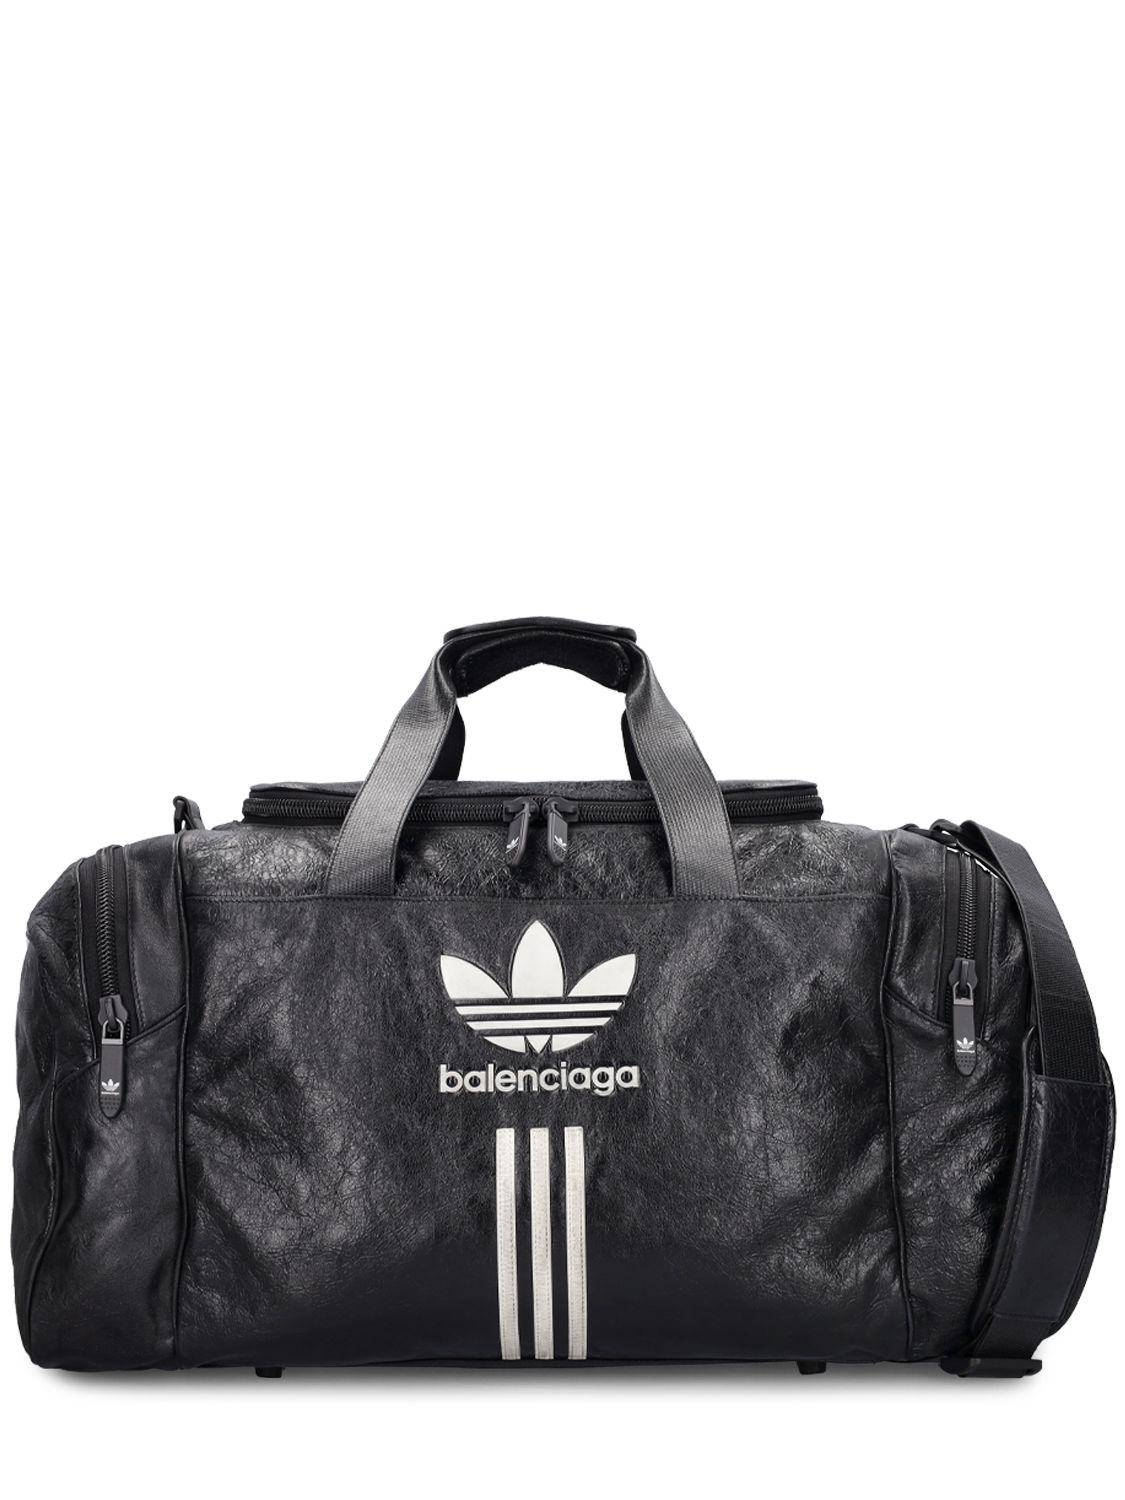 Adidas Gym Bag - BALENCIAGA - Modalova